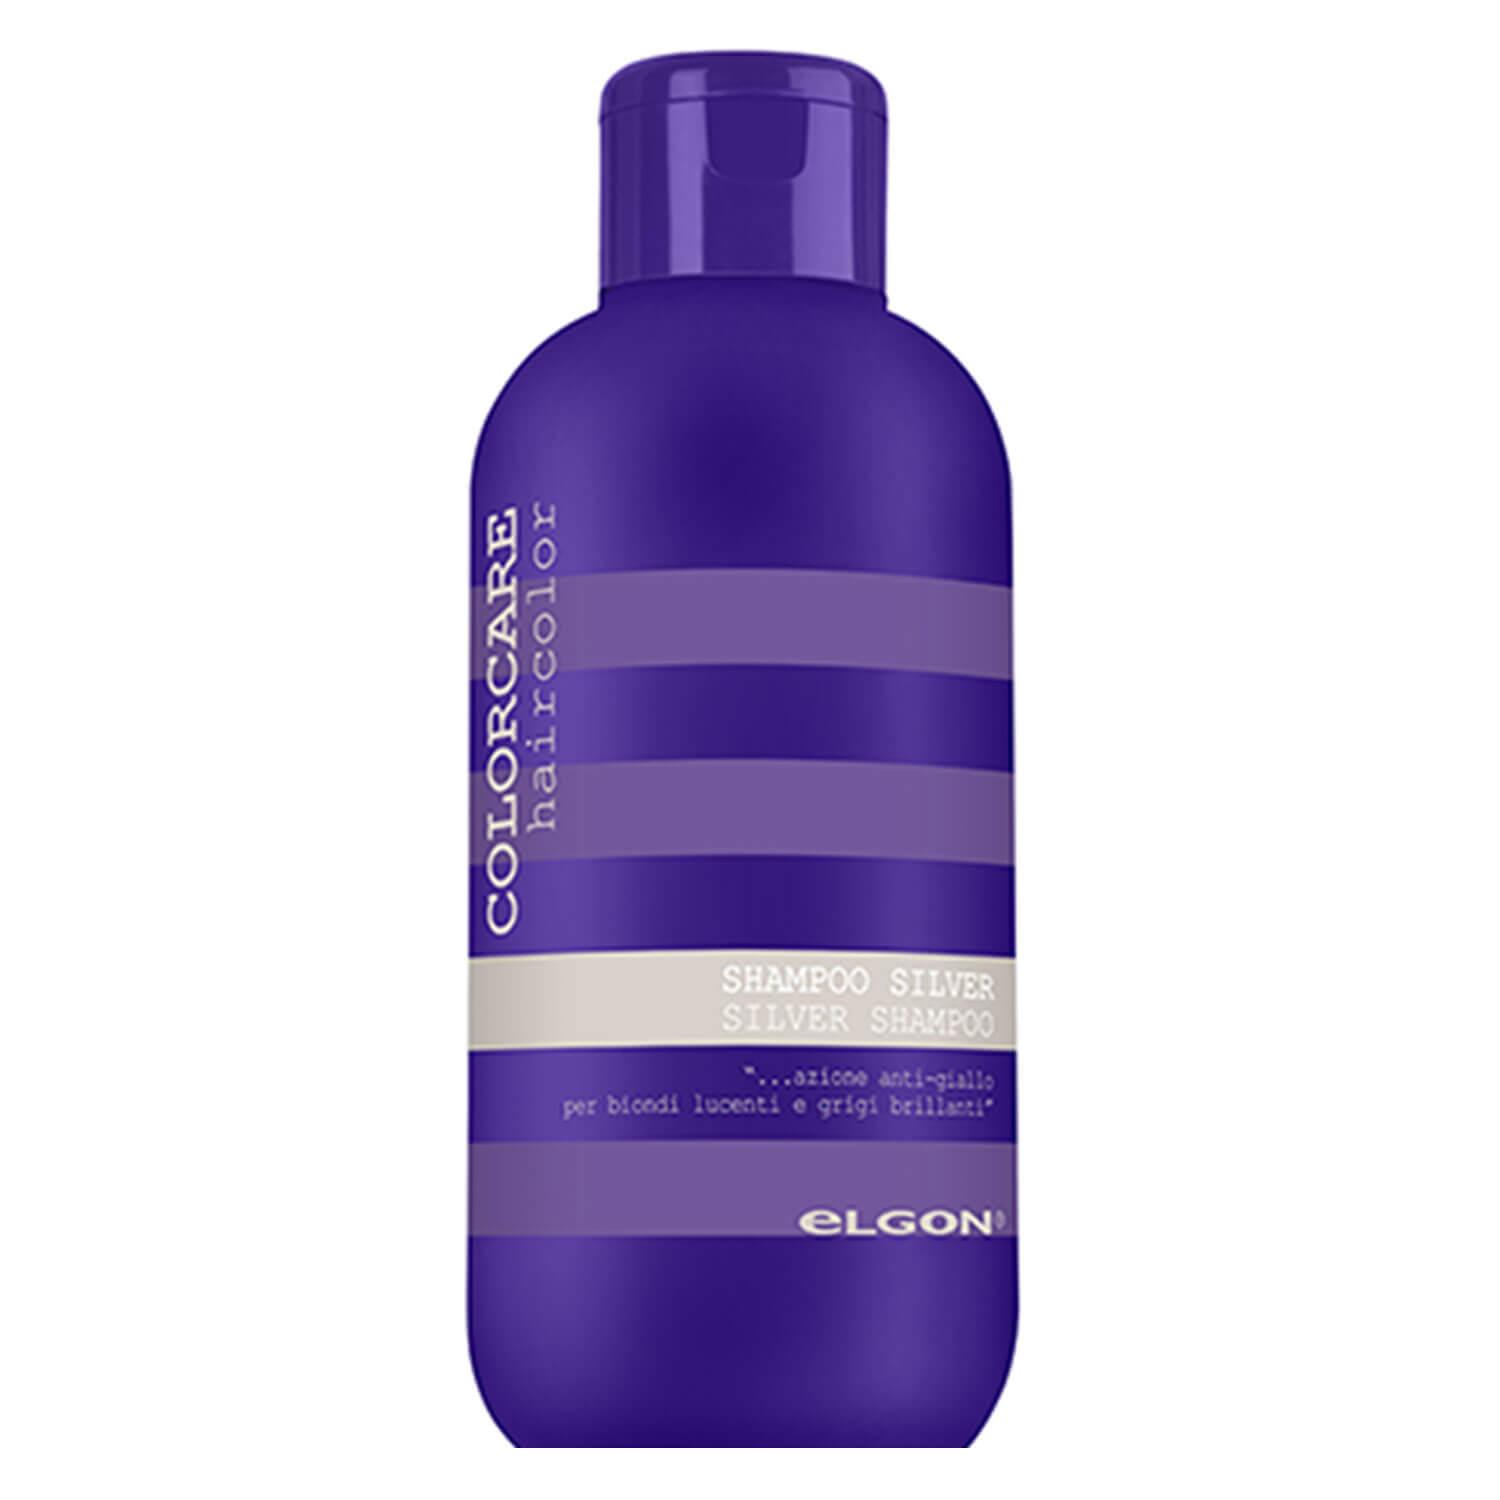 ColorCare - Silver Shampoo